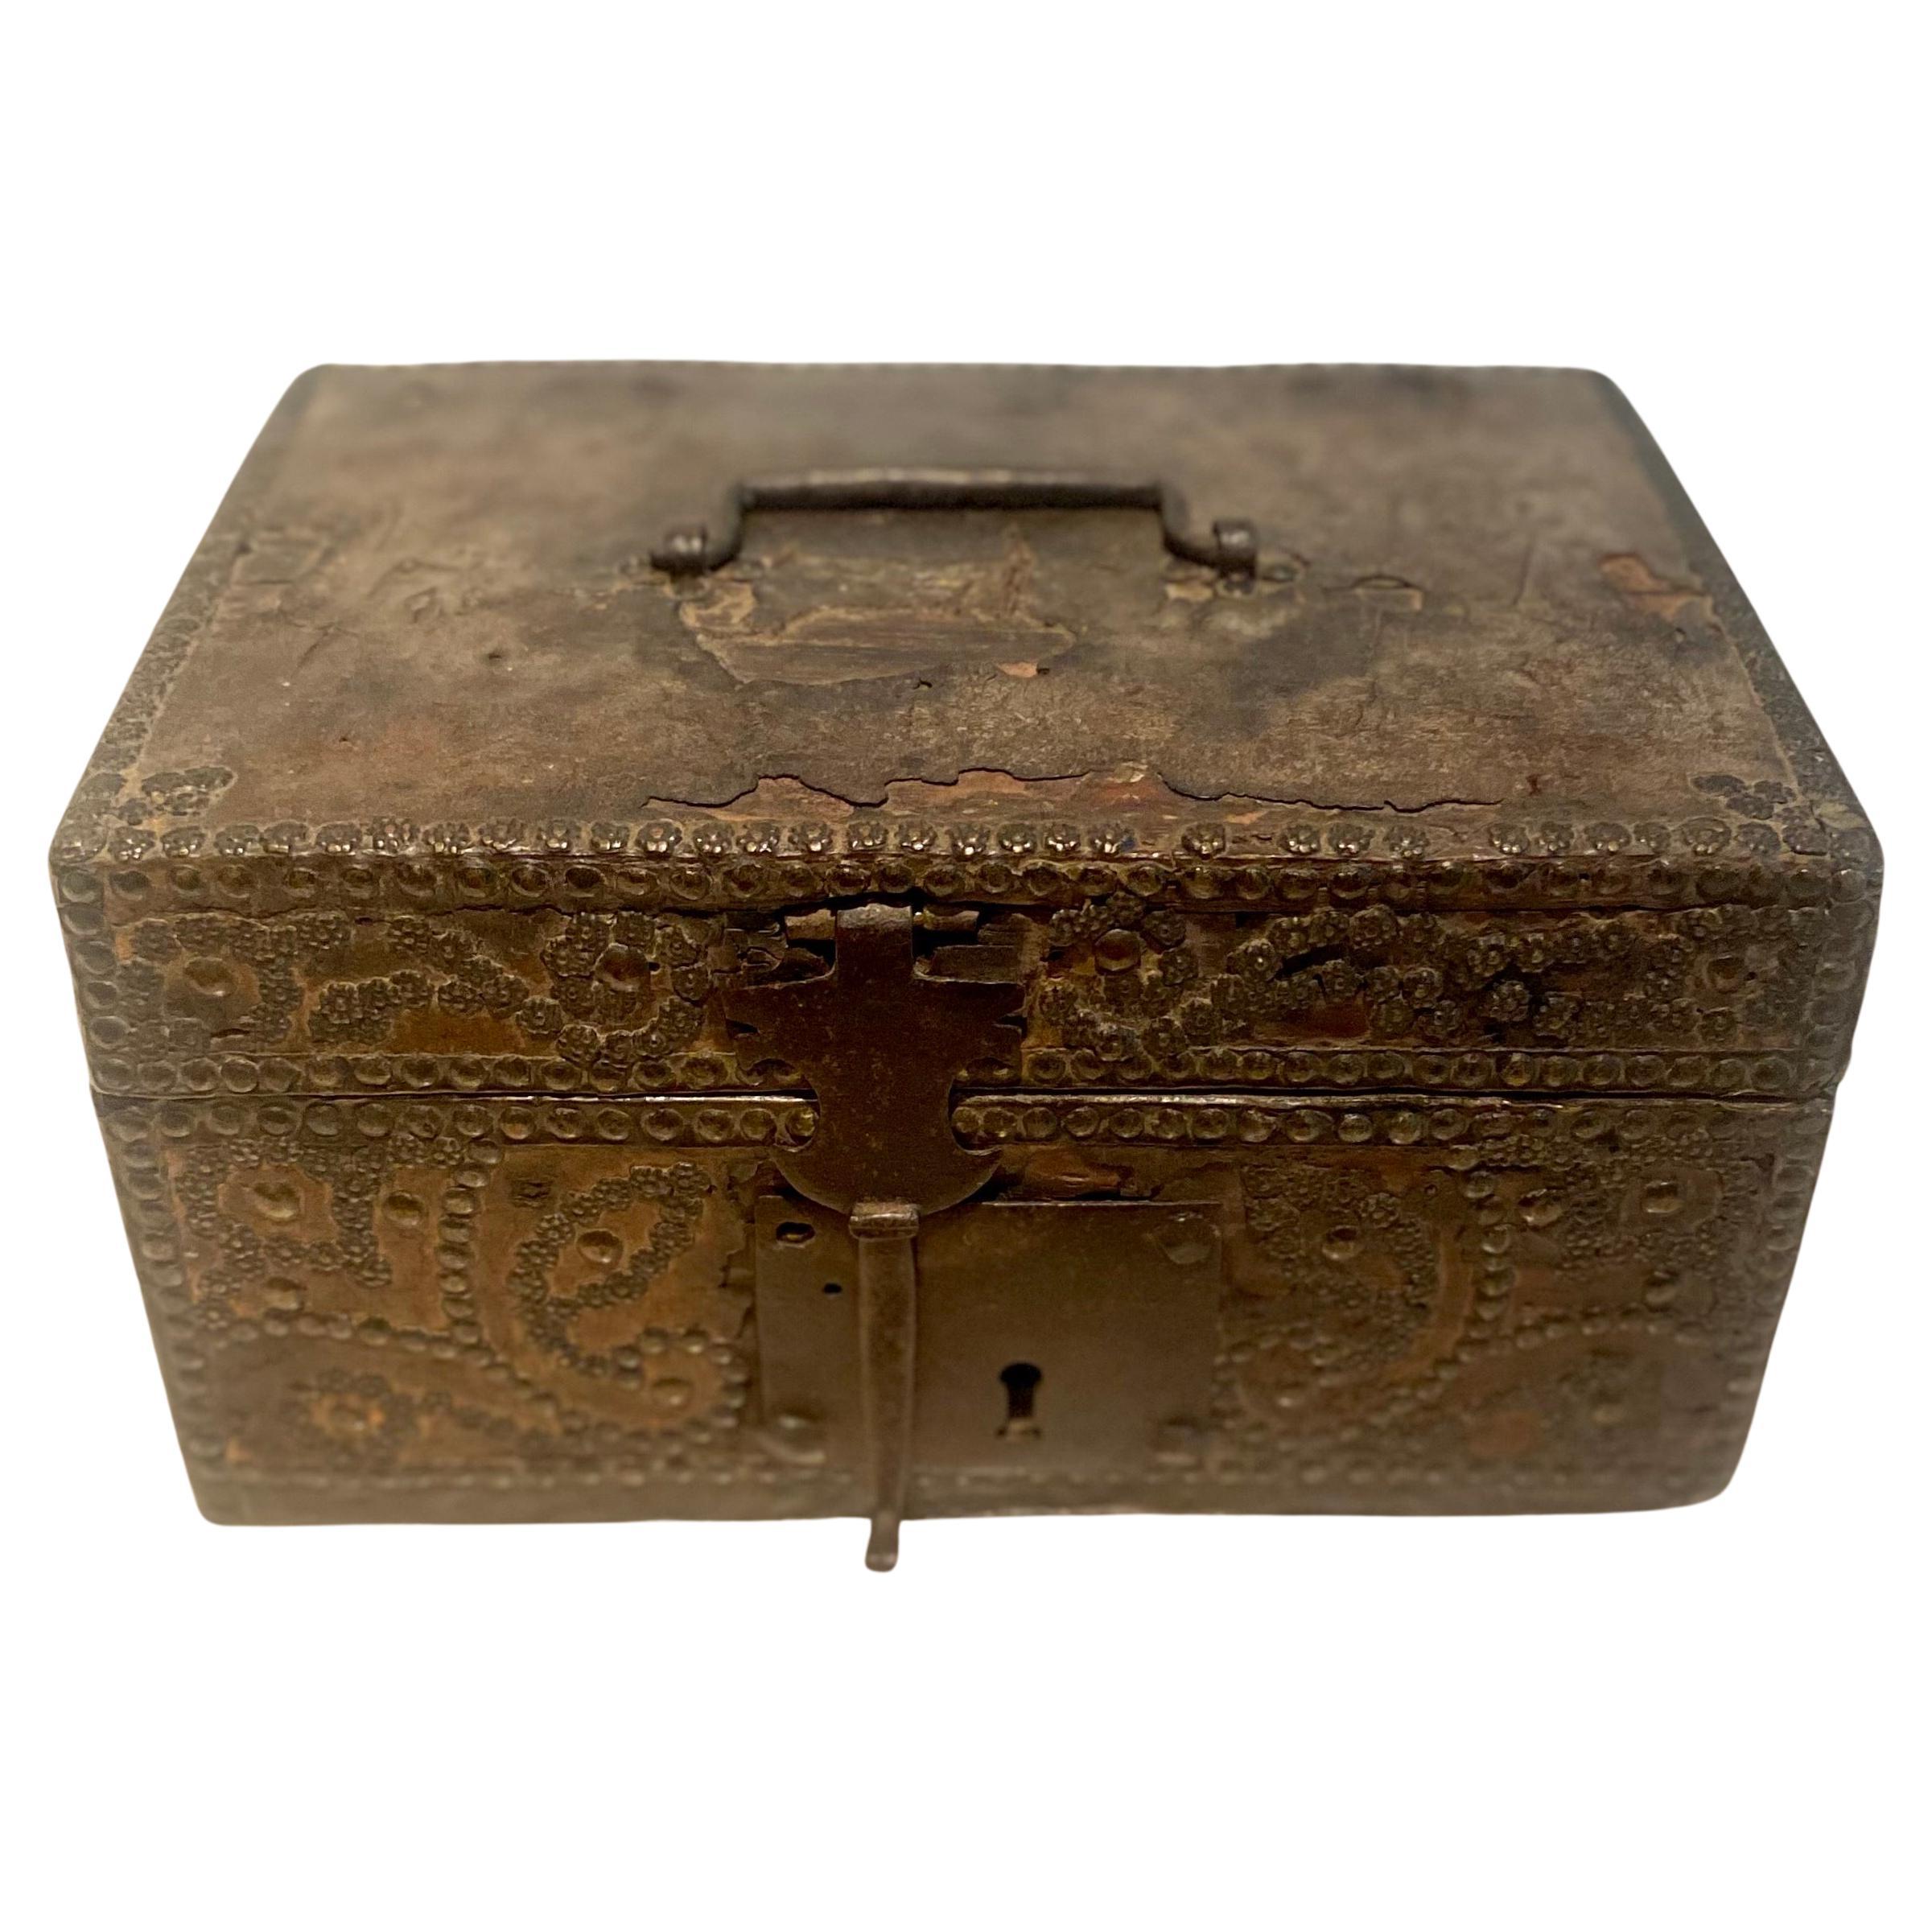 Merveilleuse boîte de messager de la période Louis XIV, fin 17ème début 18ème siècle.
Cette jolie boîte est fabriquée en bois gainé de cuir et décorée de clous en cuivre formant des volutes et des fleurs sur le devant de la boîte. Certains ongles